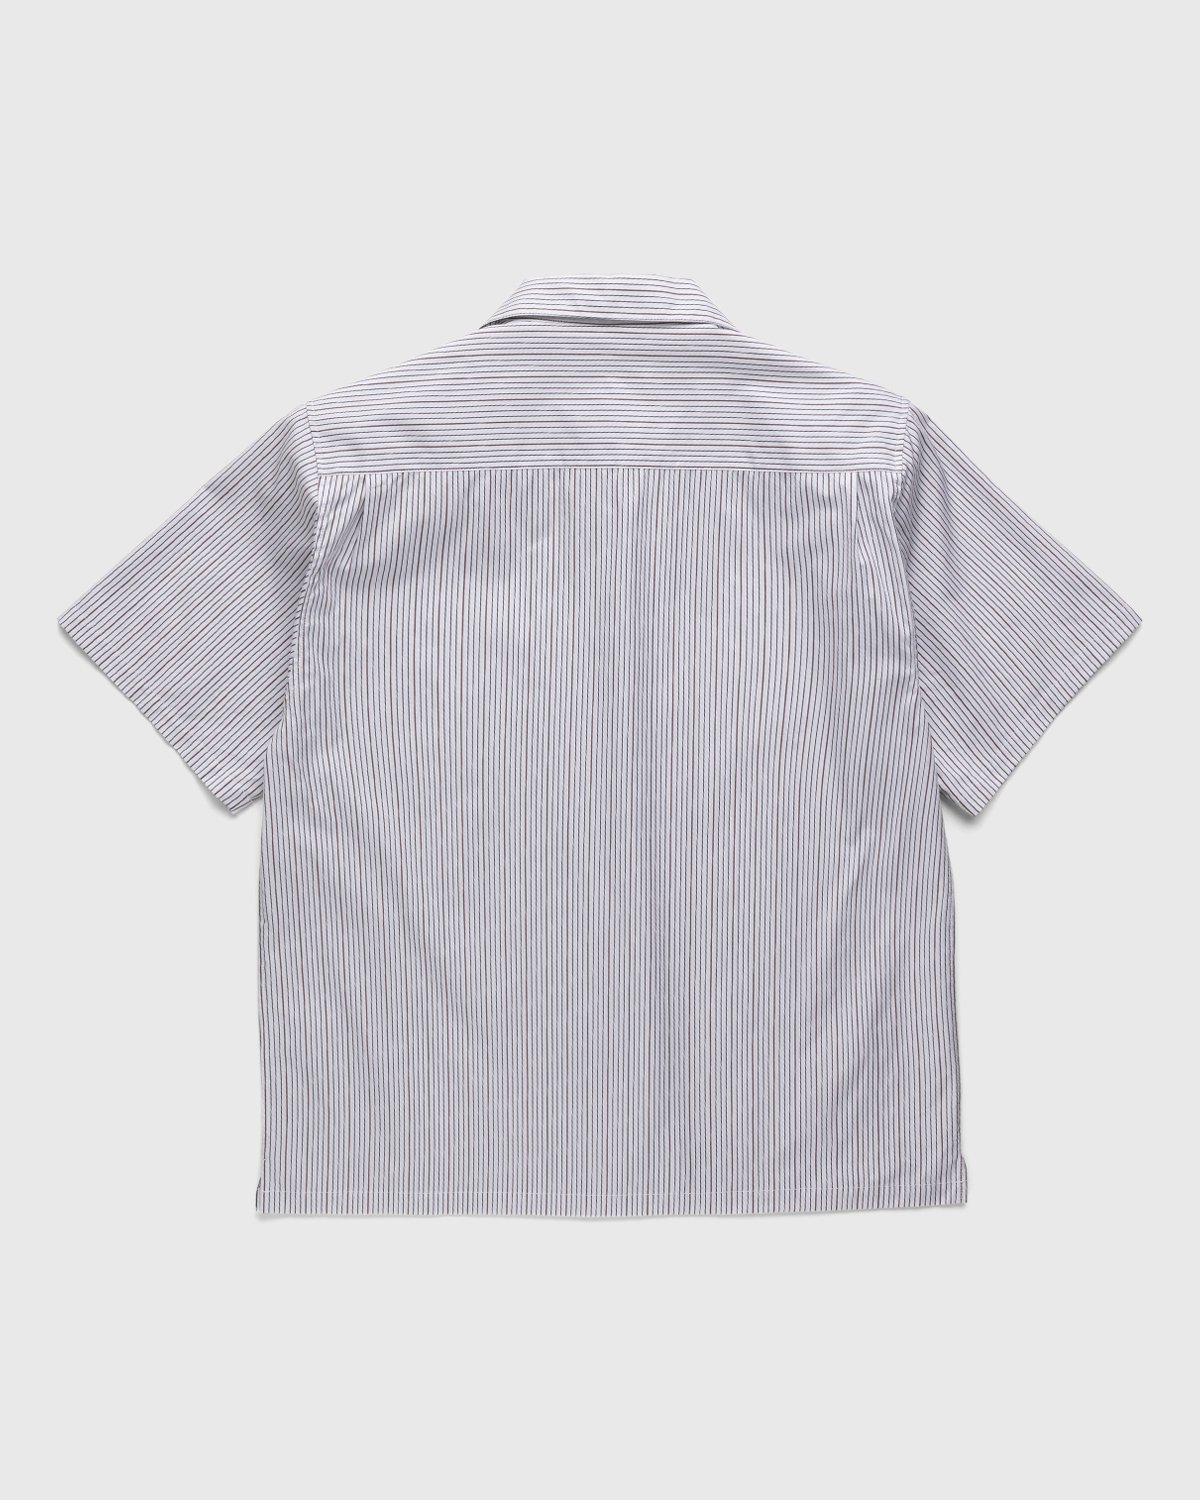 Highsnobiety - Striped Poplin Short-Sleeve Shirt White/Black - Clothing - White - Image 2